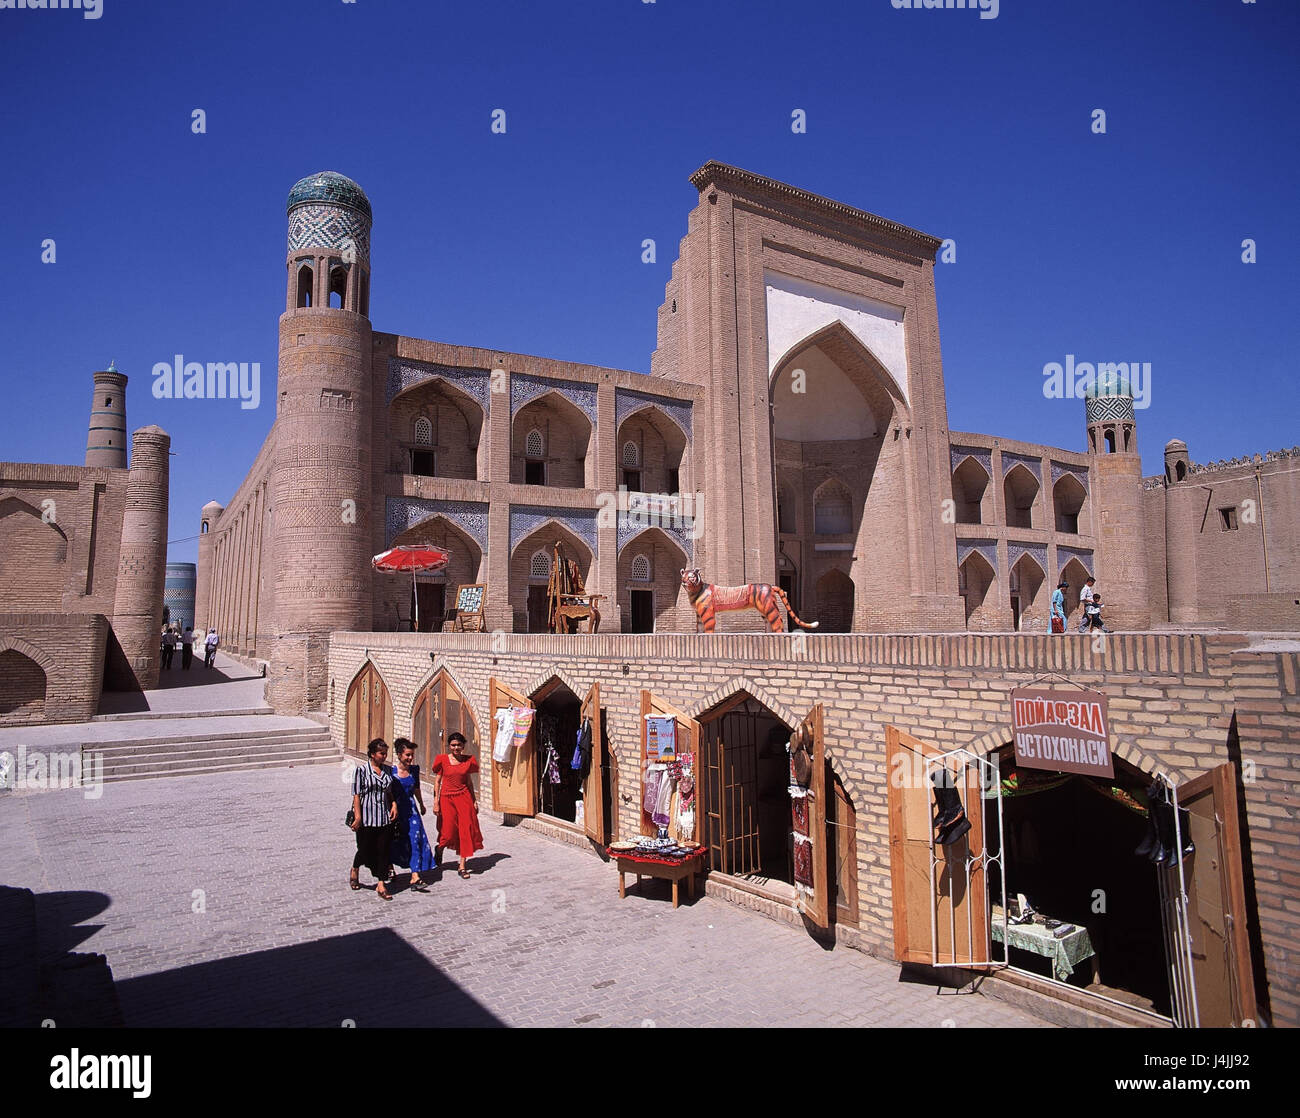 Usbekistan, Chiwa, Old Town, Mohamed Rakhim Khan Medrese Chiva, Blick auf die Stadt, UNESCO-Weltkulturerbe, Struktur, College, islamische, außerhalb, Erhaltung der Denkmäler und historische Gebäude Stockfoto